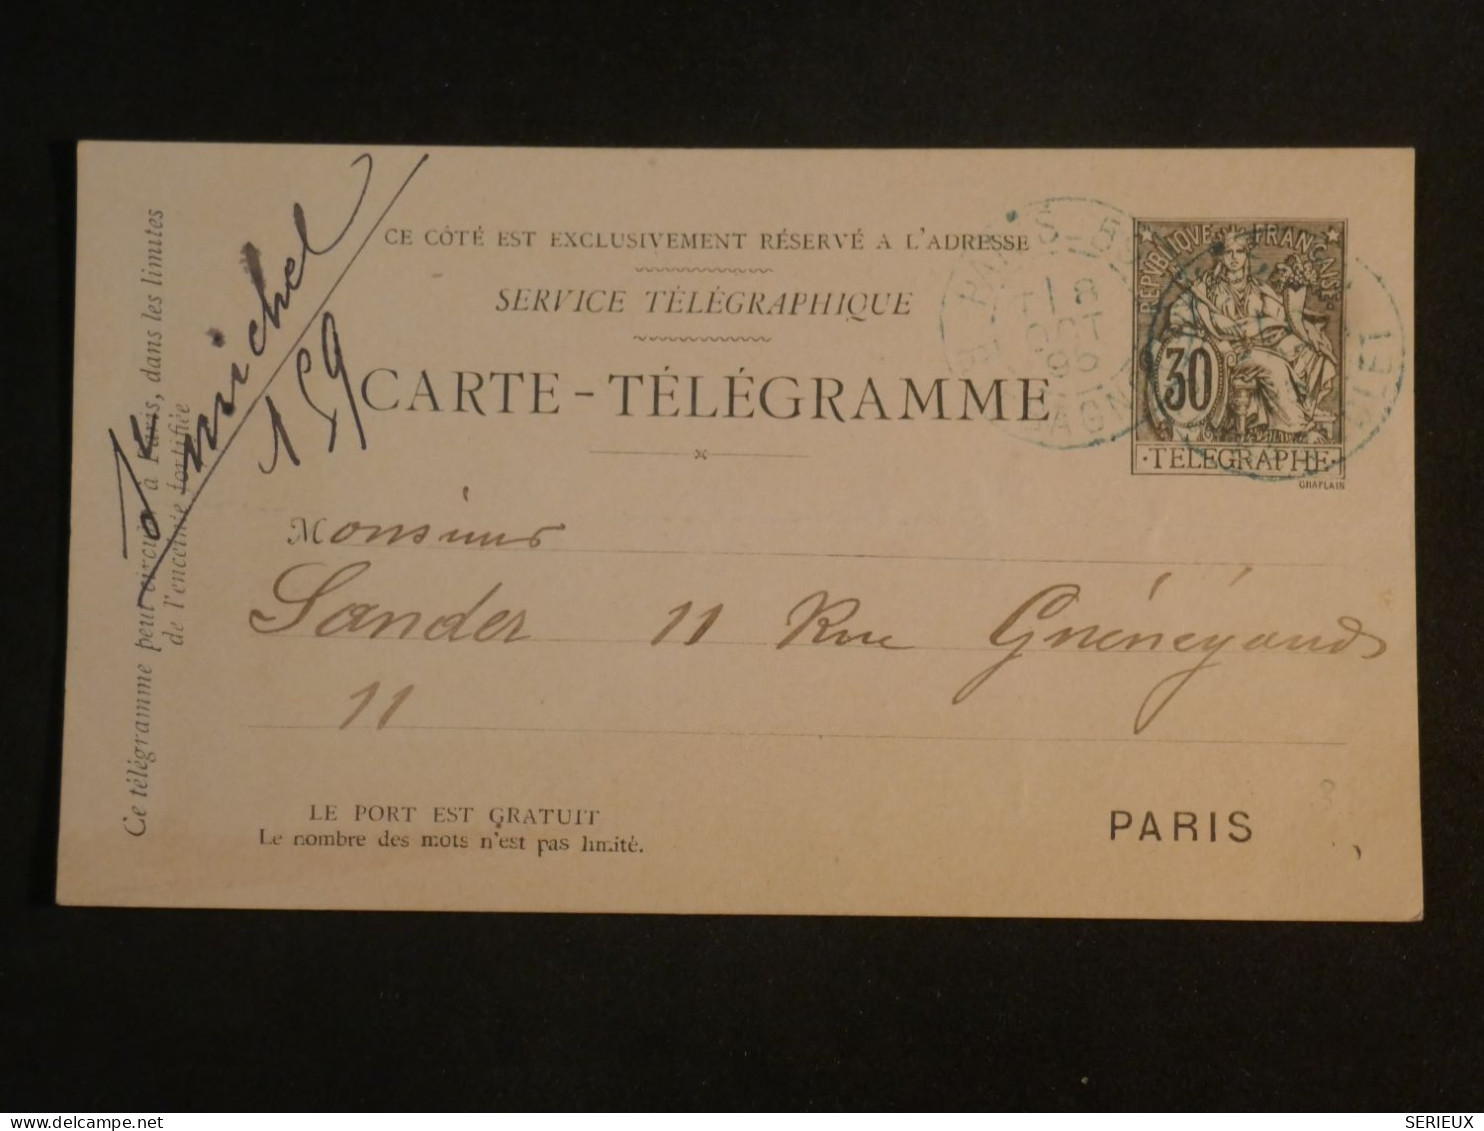 DI 12 FRANCE BELLE  LETTRE  TELEGRAMME   1895  A PARIS     + +++AFF. INTERESSANT+++ - Télégraphes Et Téléphones